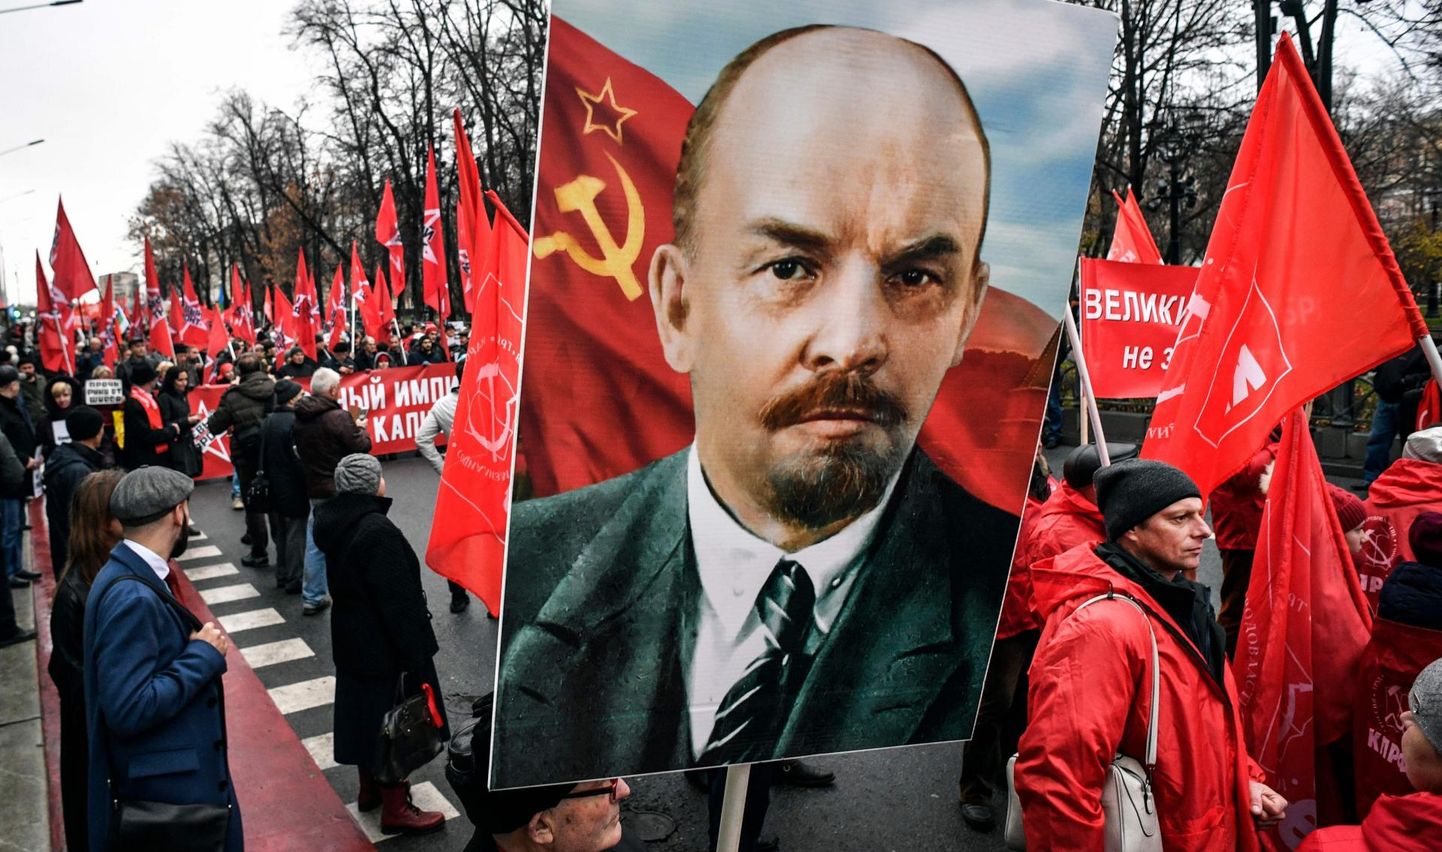 Venemaa Kommunistliku Partei toetajad 7. novembril 2019 Punasel väljakul marssimas.